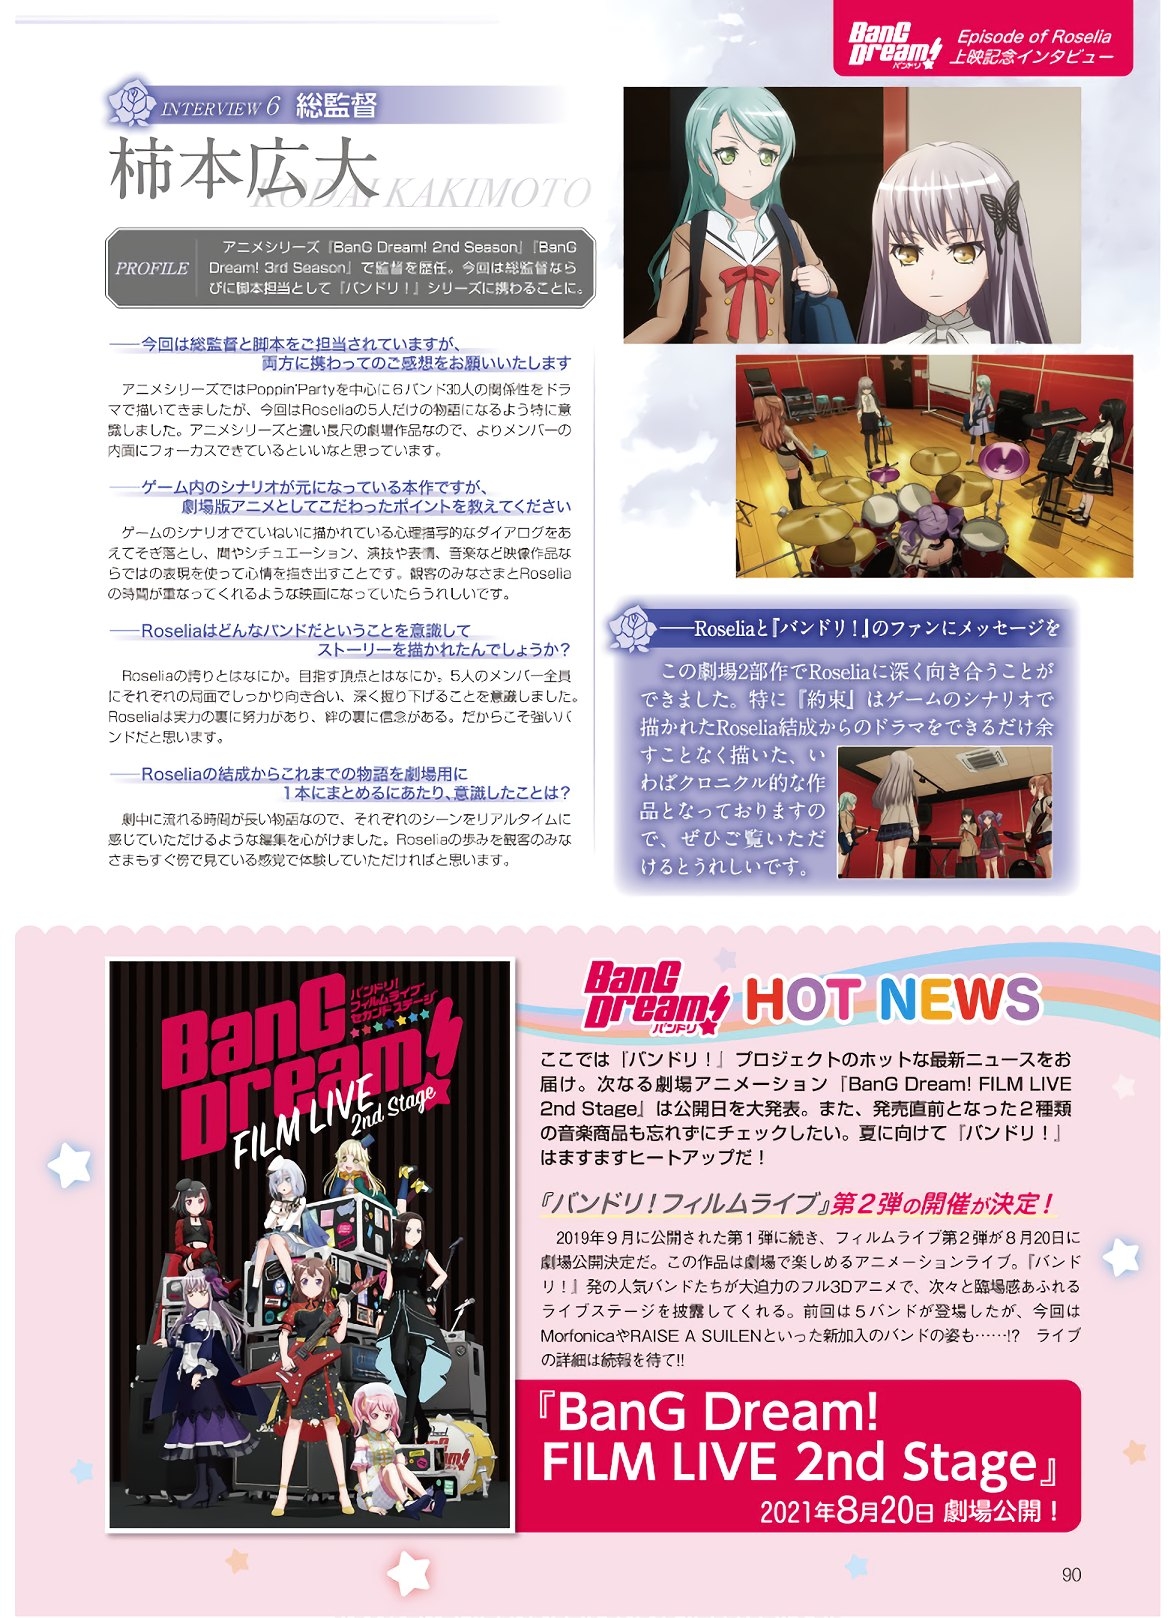 Dengeki G's Magazine #286 - May 2021 87